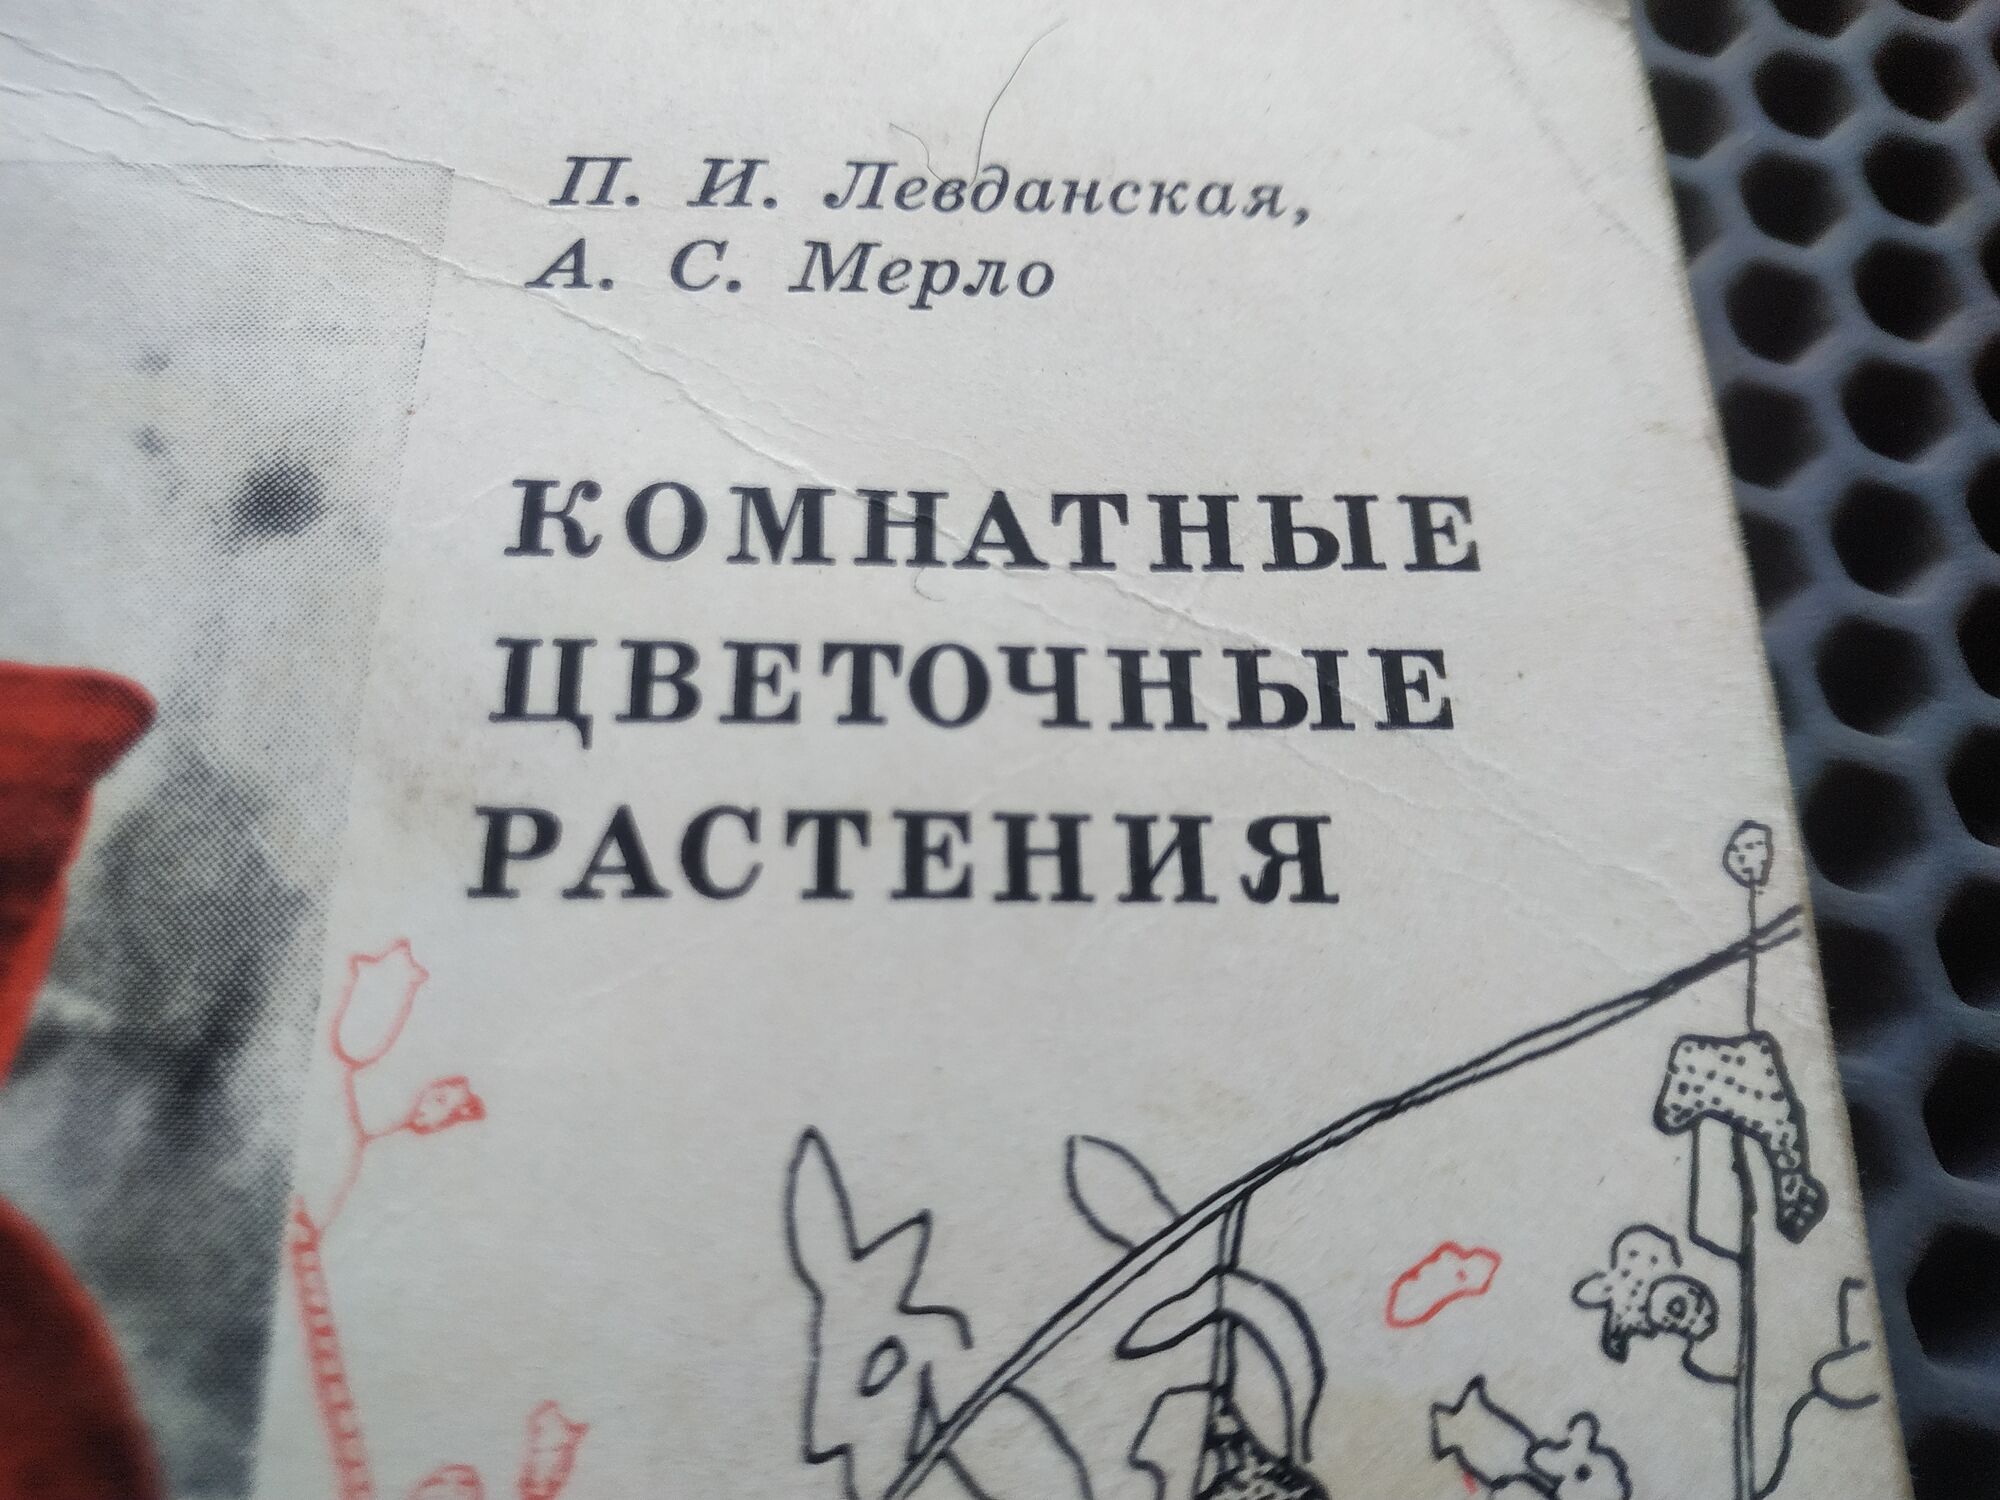 Книга "Комнатные цветочные растения", СССР